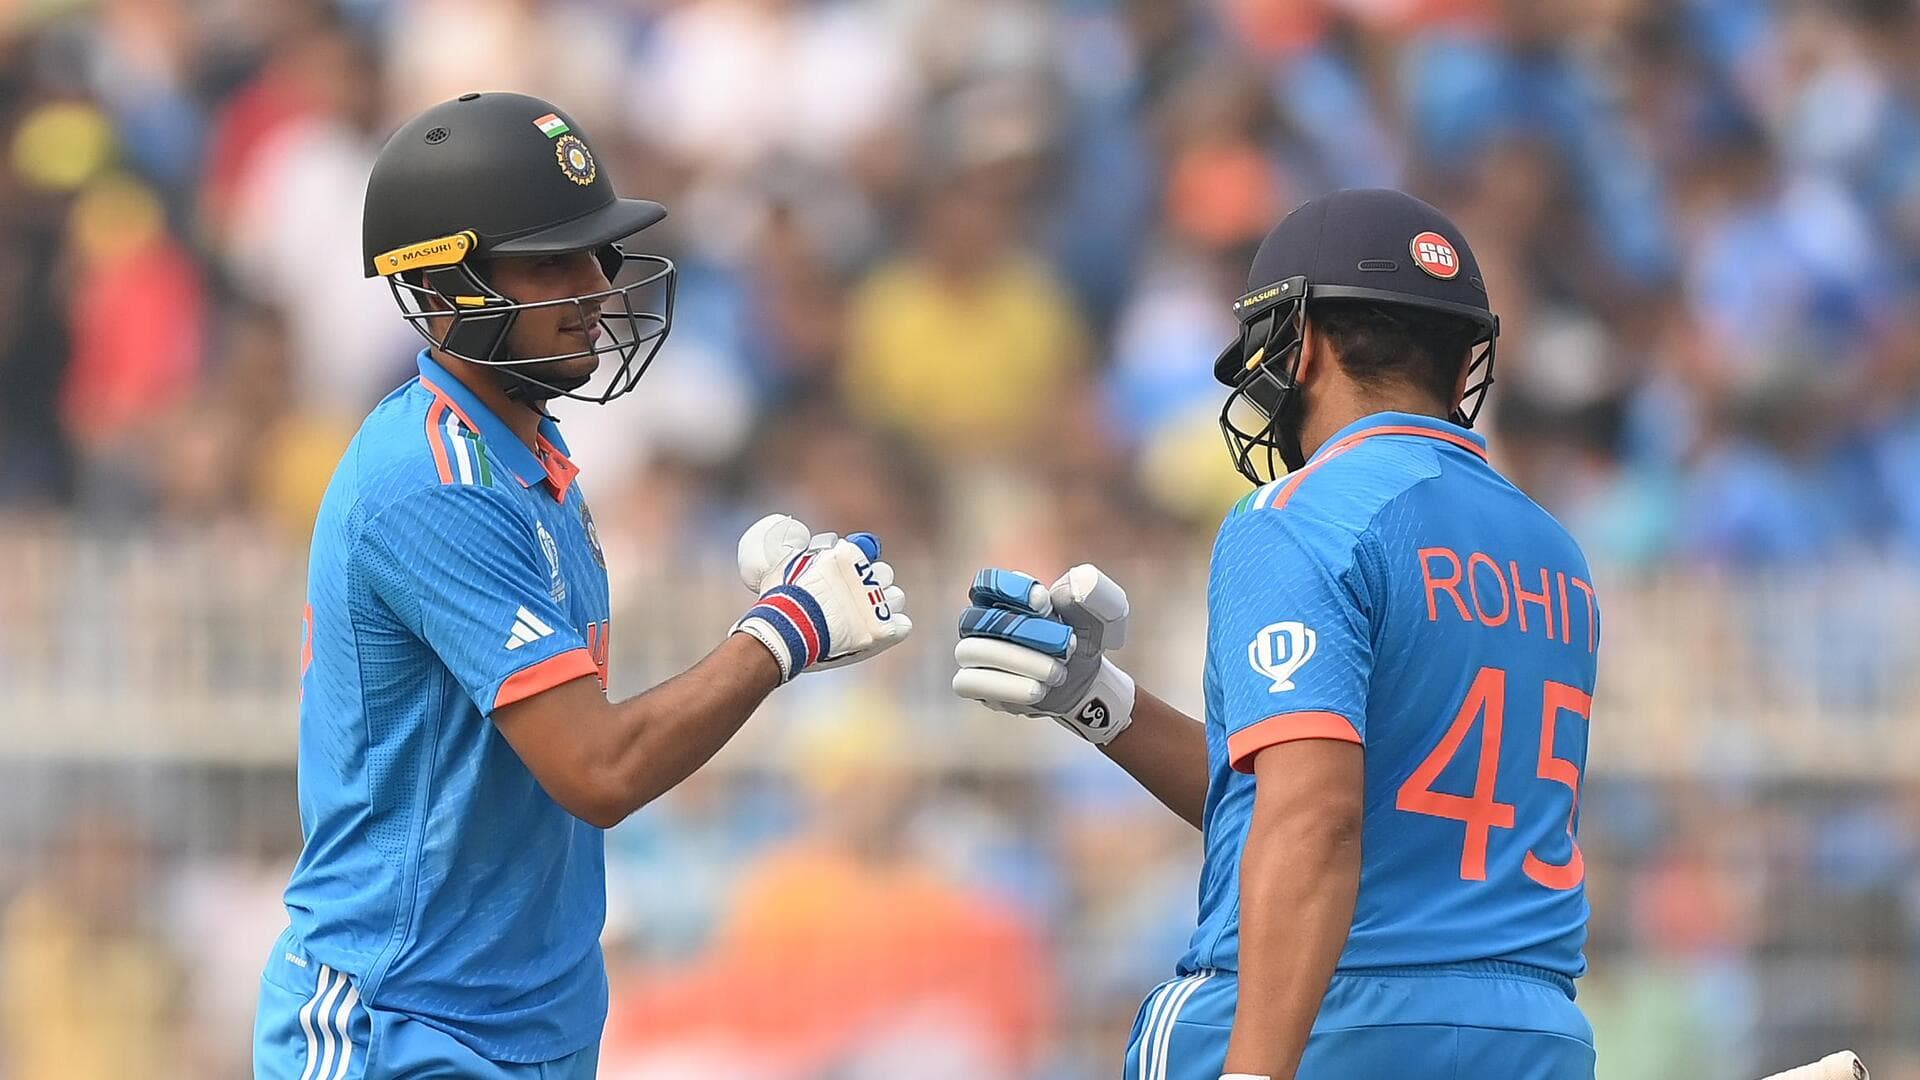 ICC की 'वनडे टीम ऑफ द ईयर' में 6 भारतीय शामिल, रोहित शर्मा चुने गए कप्तान